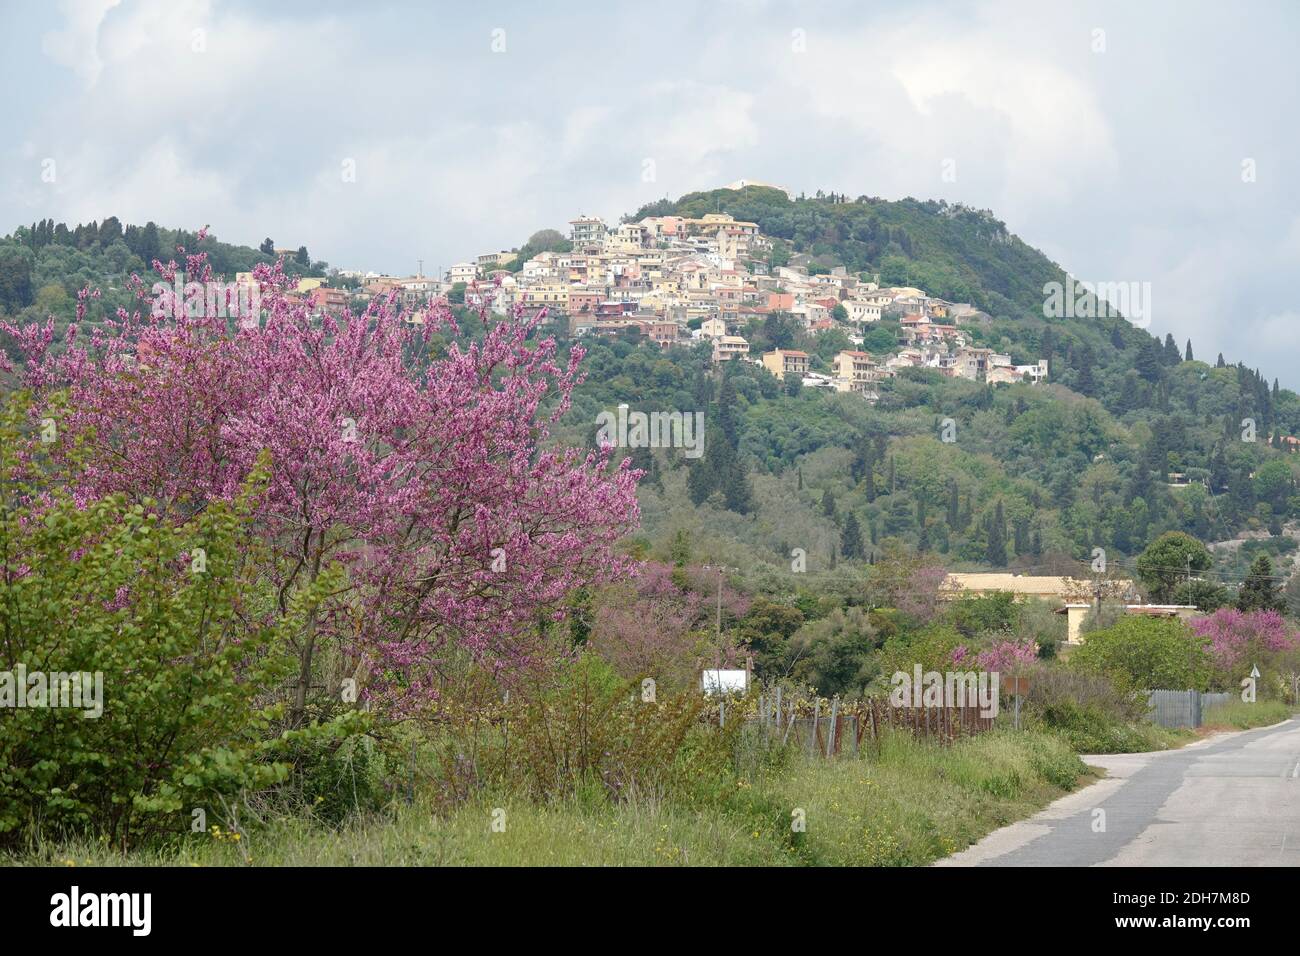 Pelekas on Corfu Stock Photo - Alamy